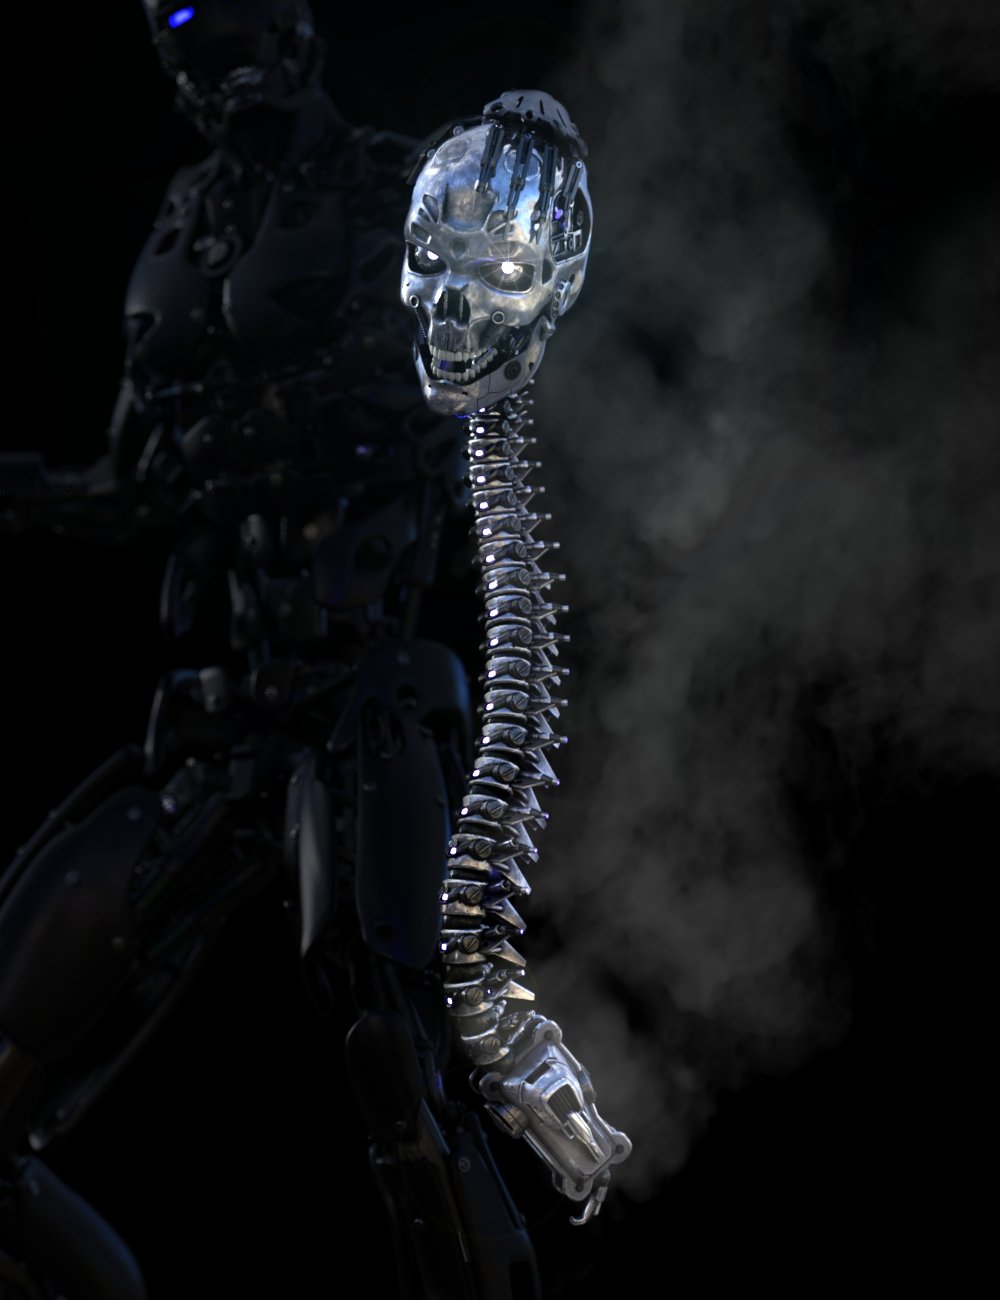 Skull n Spine Mech by: DzFire, 3D Models by Daz 3D